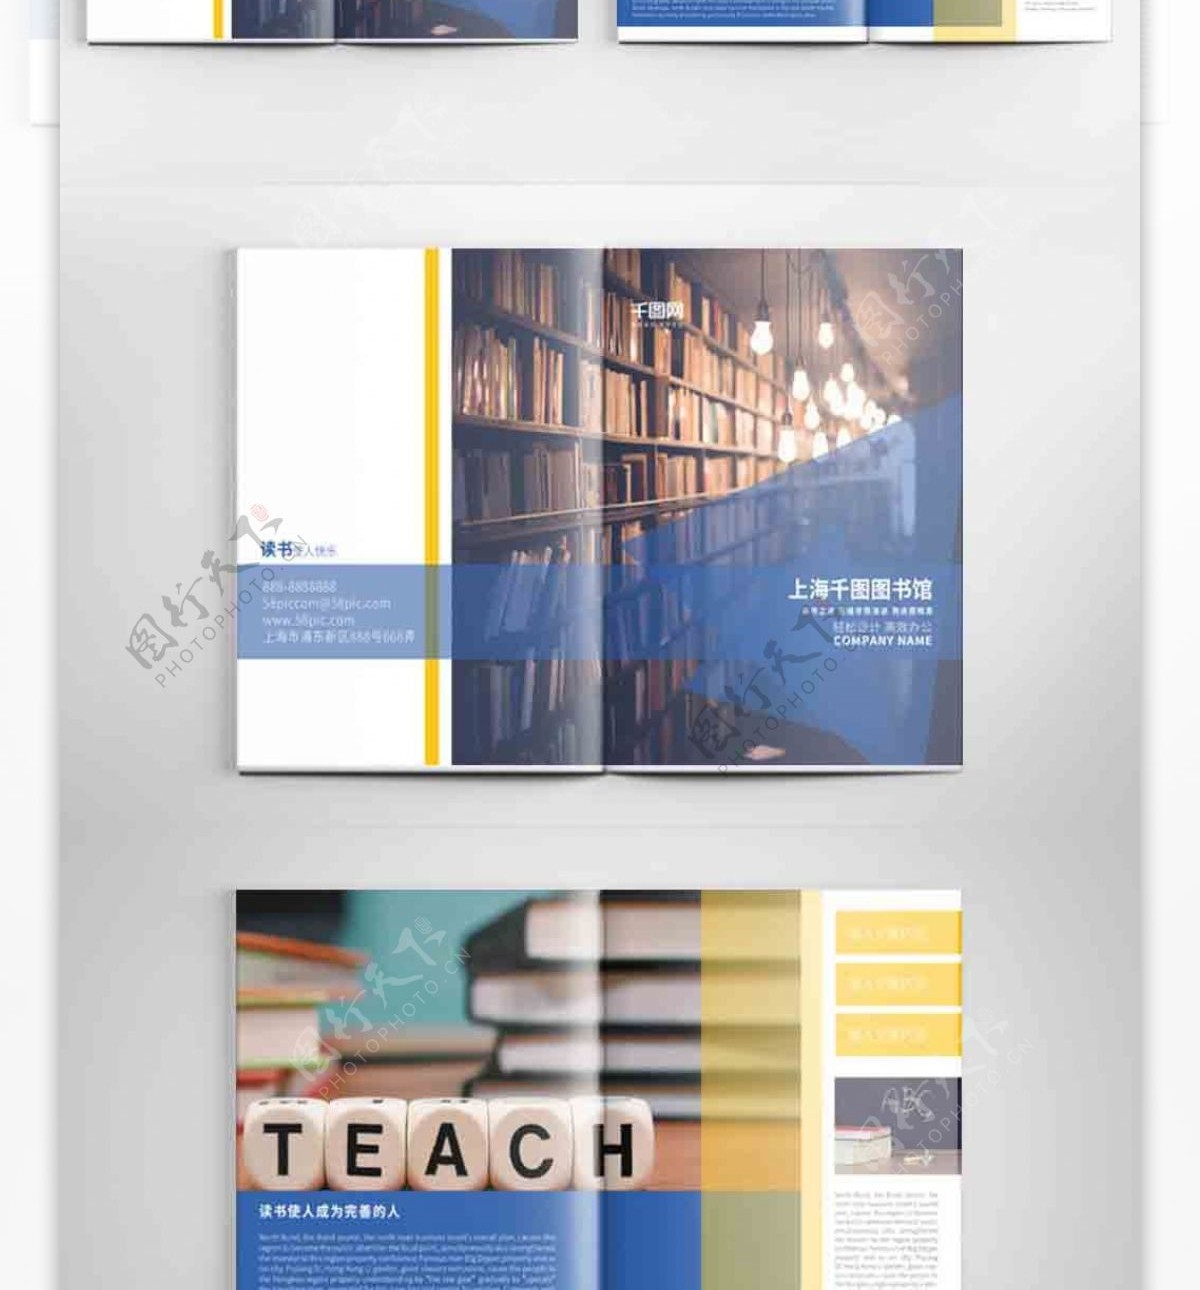 创意图书馆宣传画册设计PSD模板